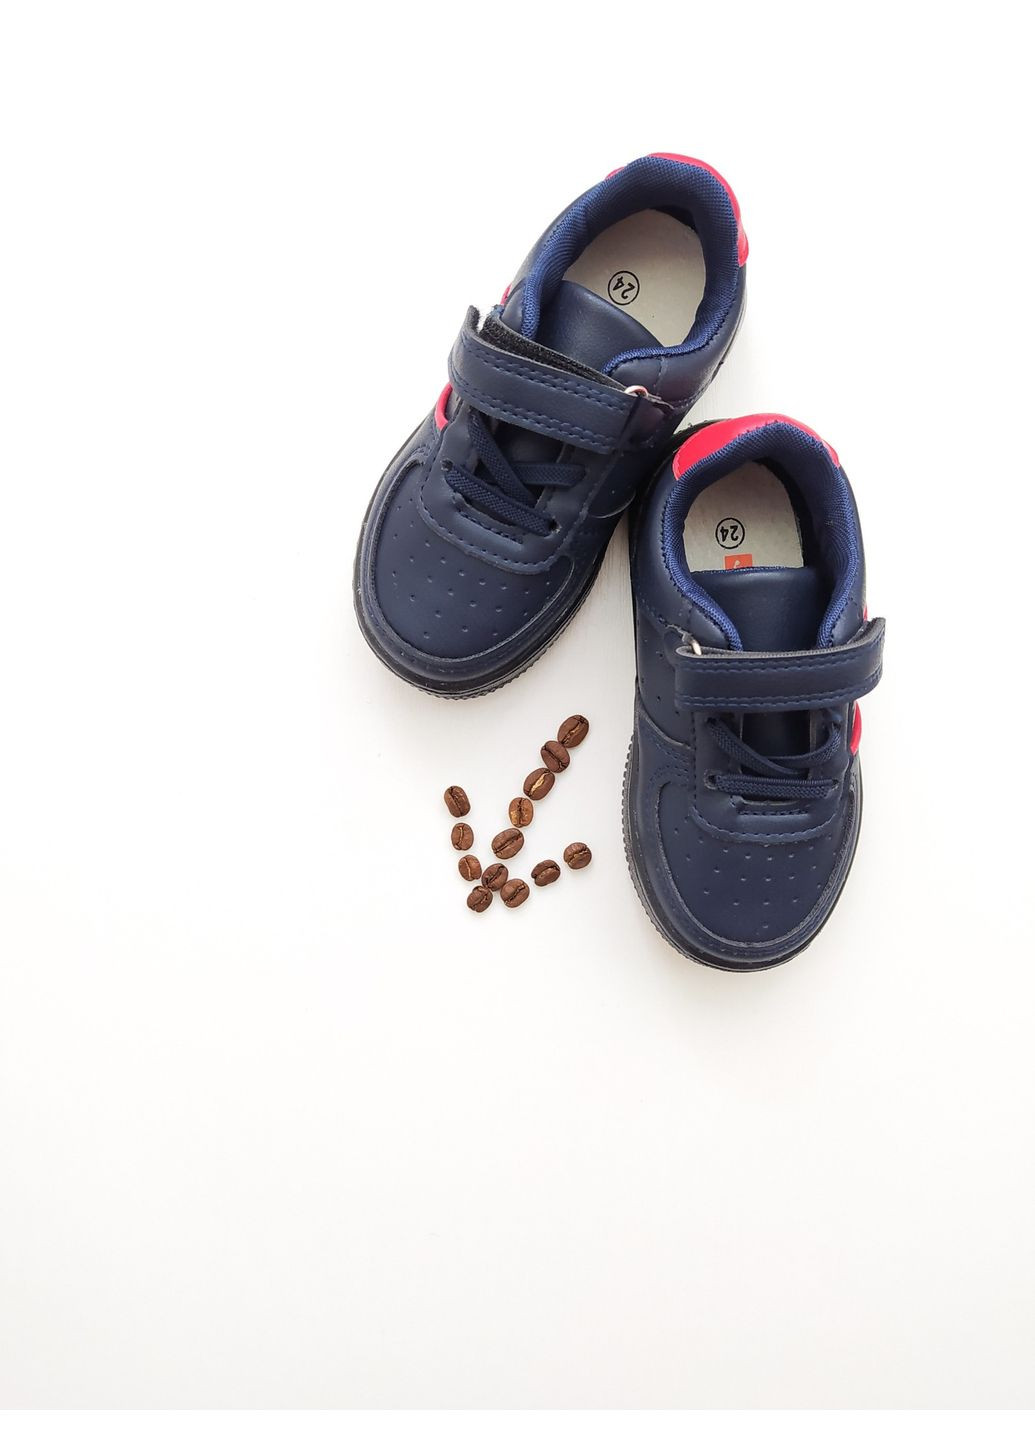 Синие детские кроссовки с подсветкой 21 г. 13,5 см синий артикул к121 Jong Golf